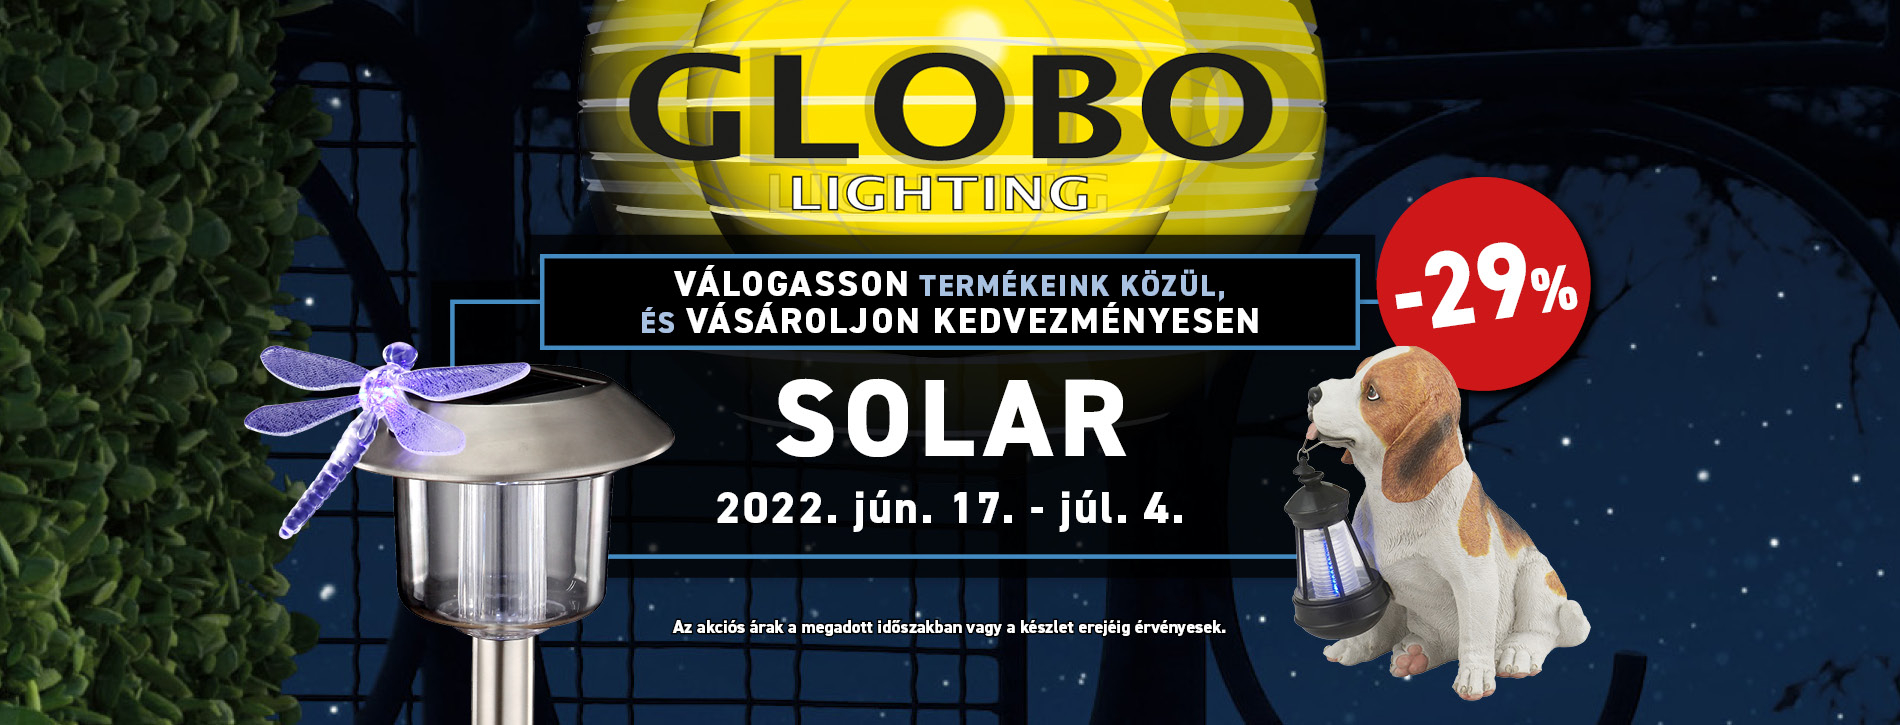 Solar 2022